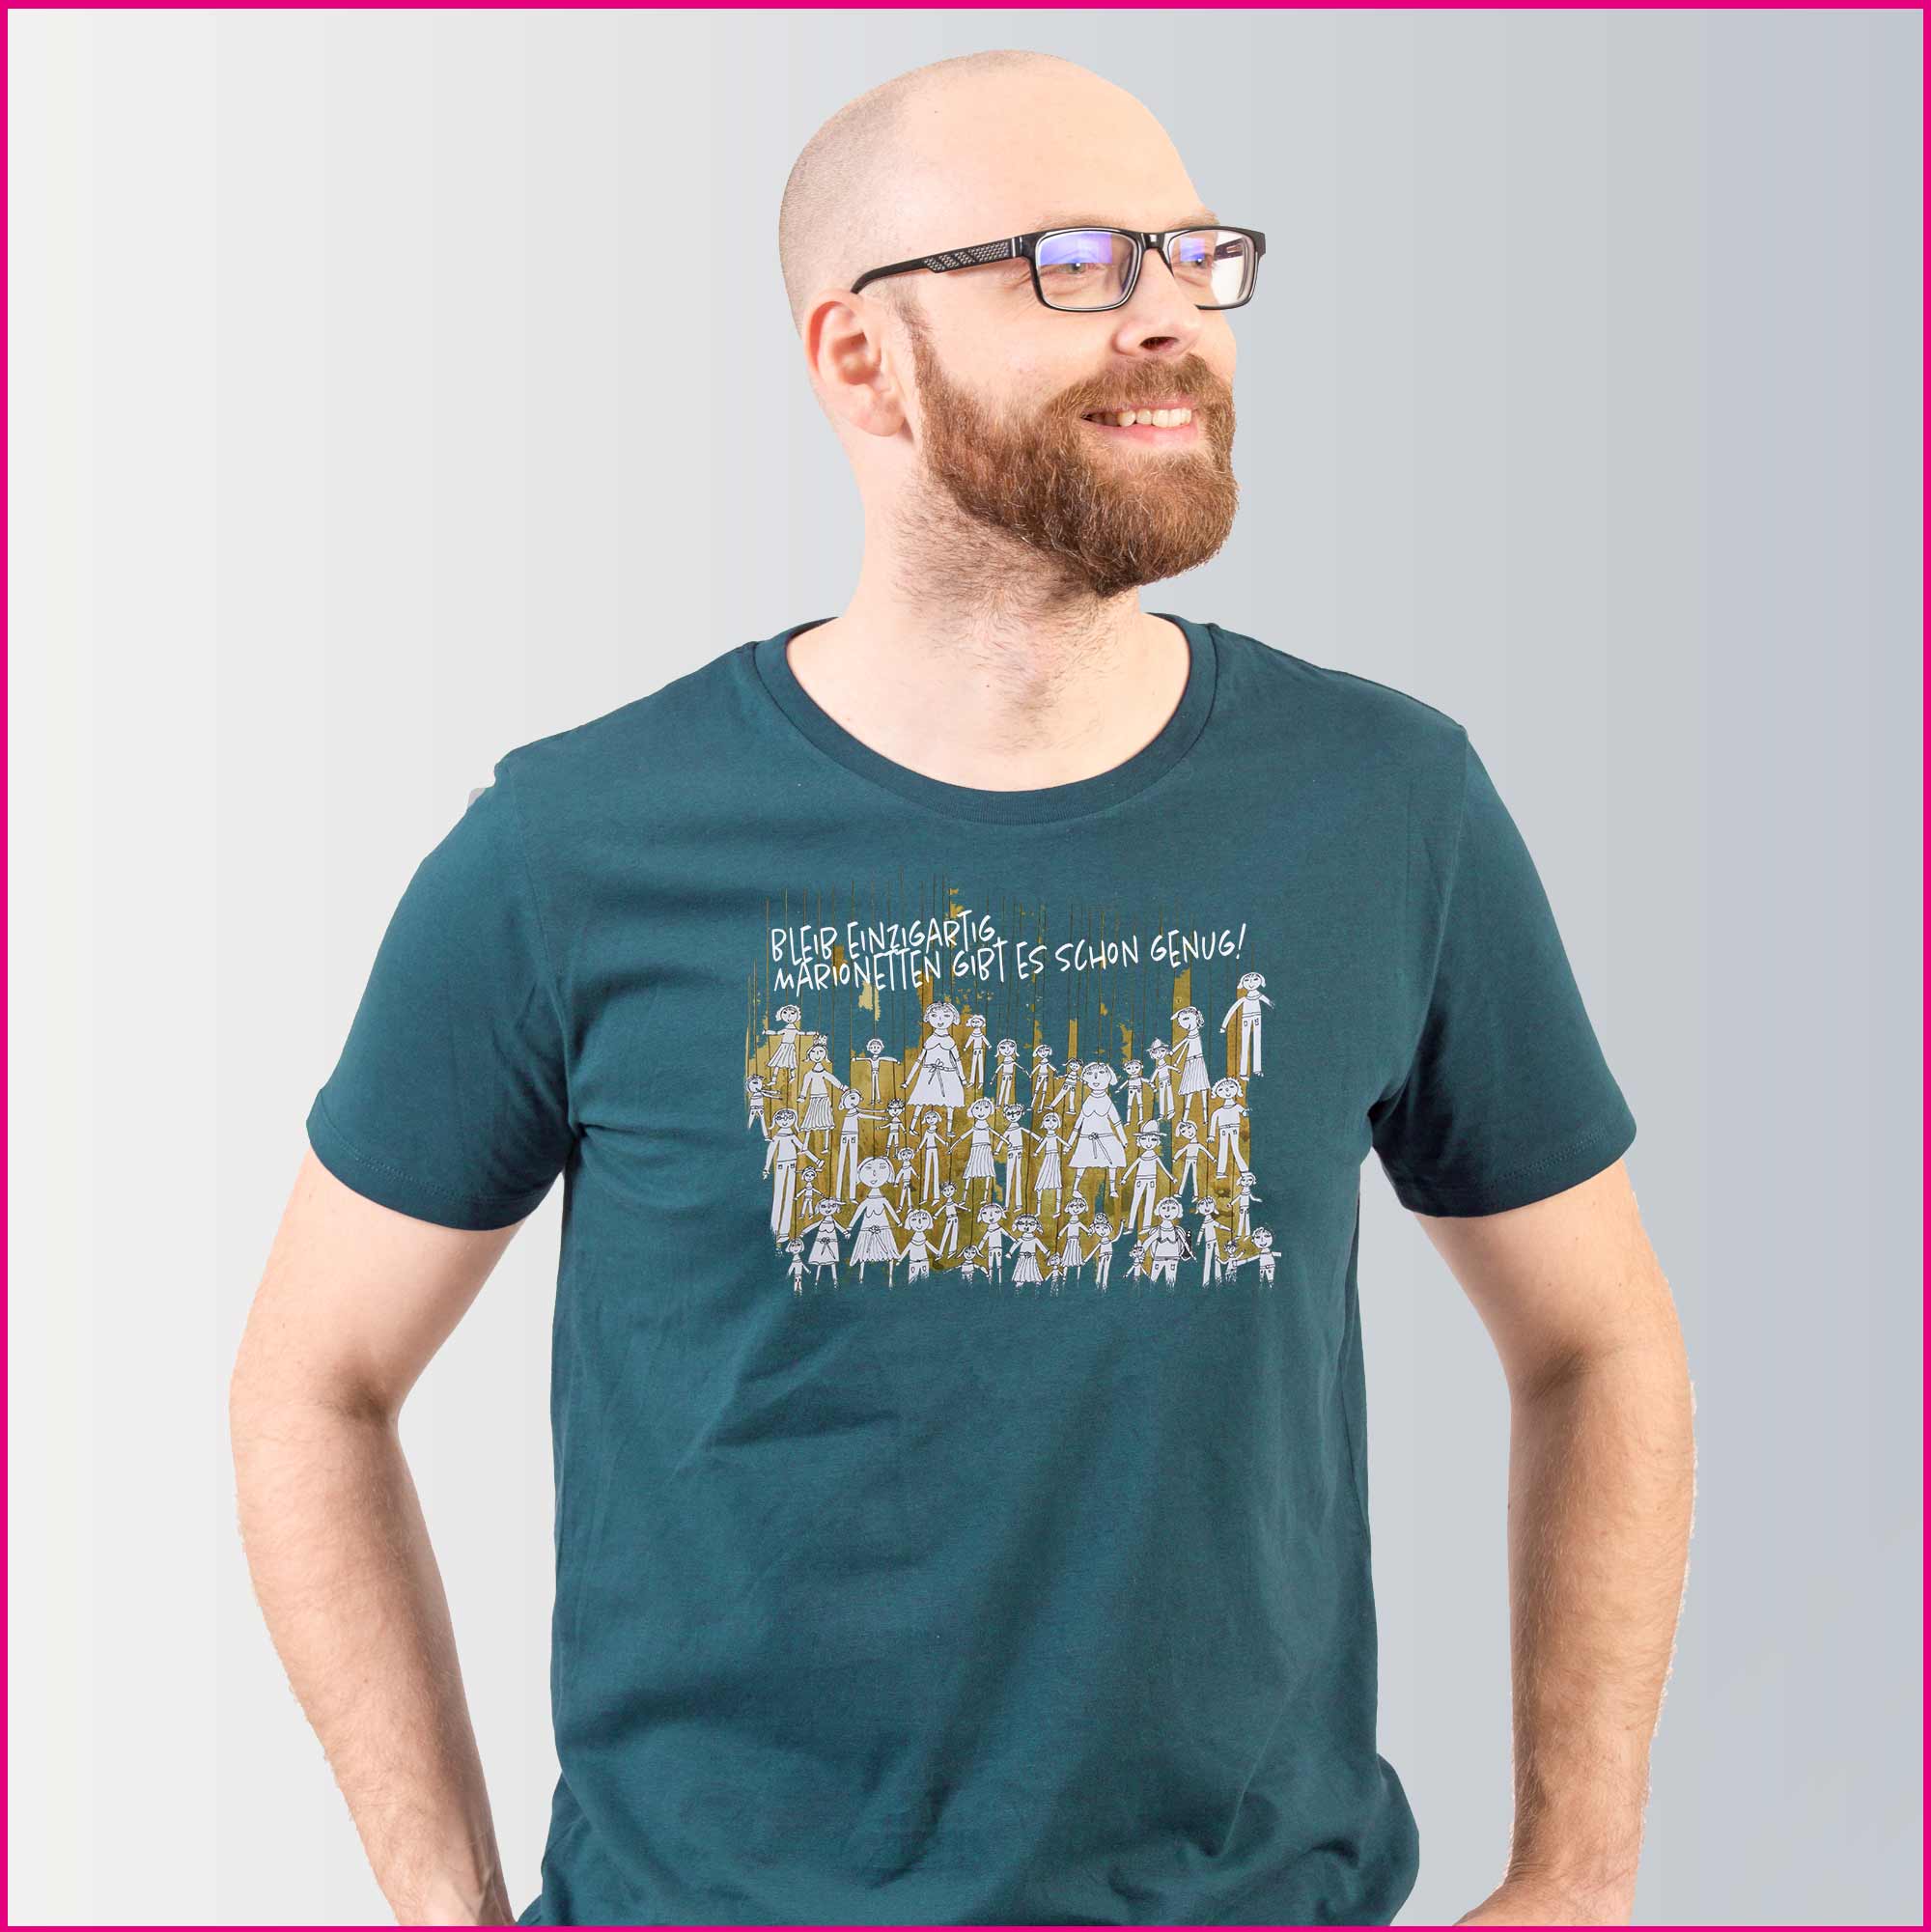 Produktfoto Männer T-Shirt mit dem Motiv "Marionettenspiel" von Marlies Vigl